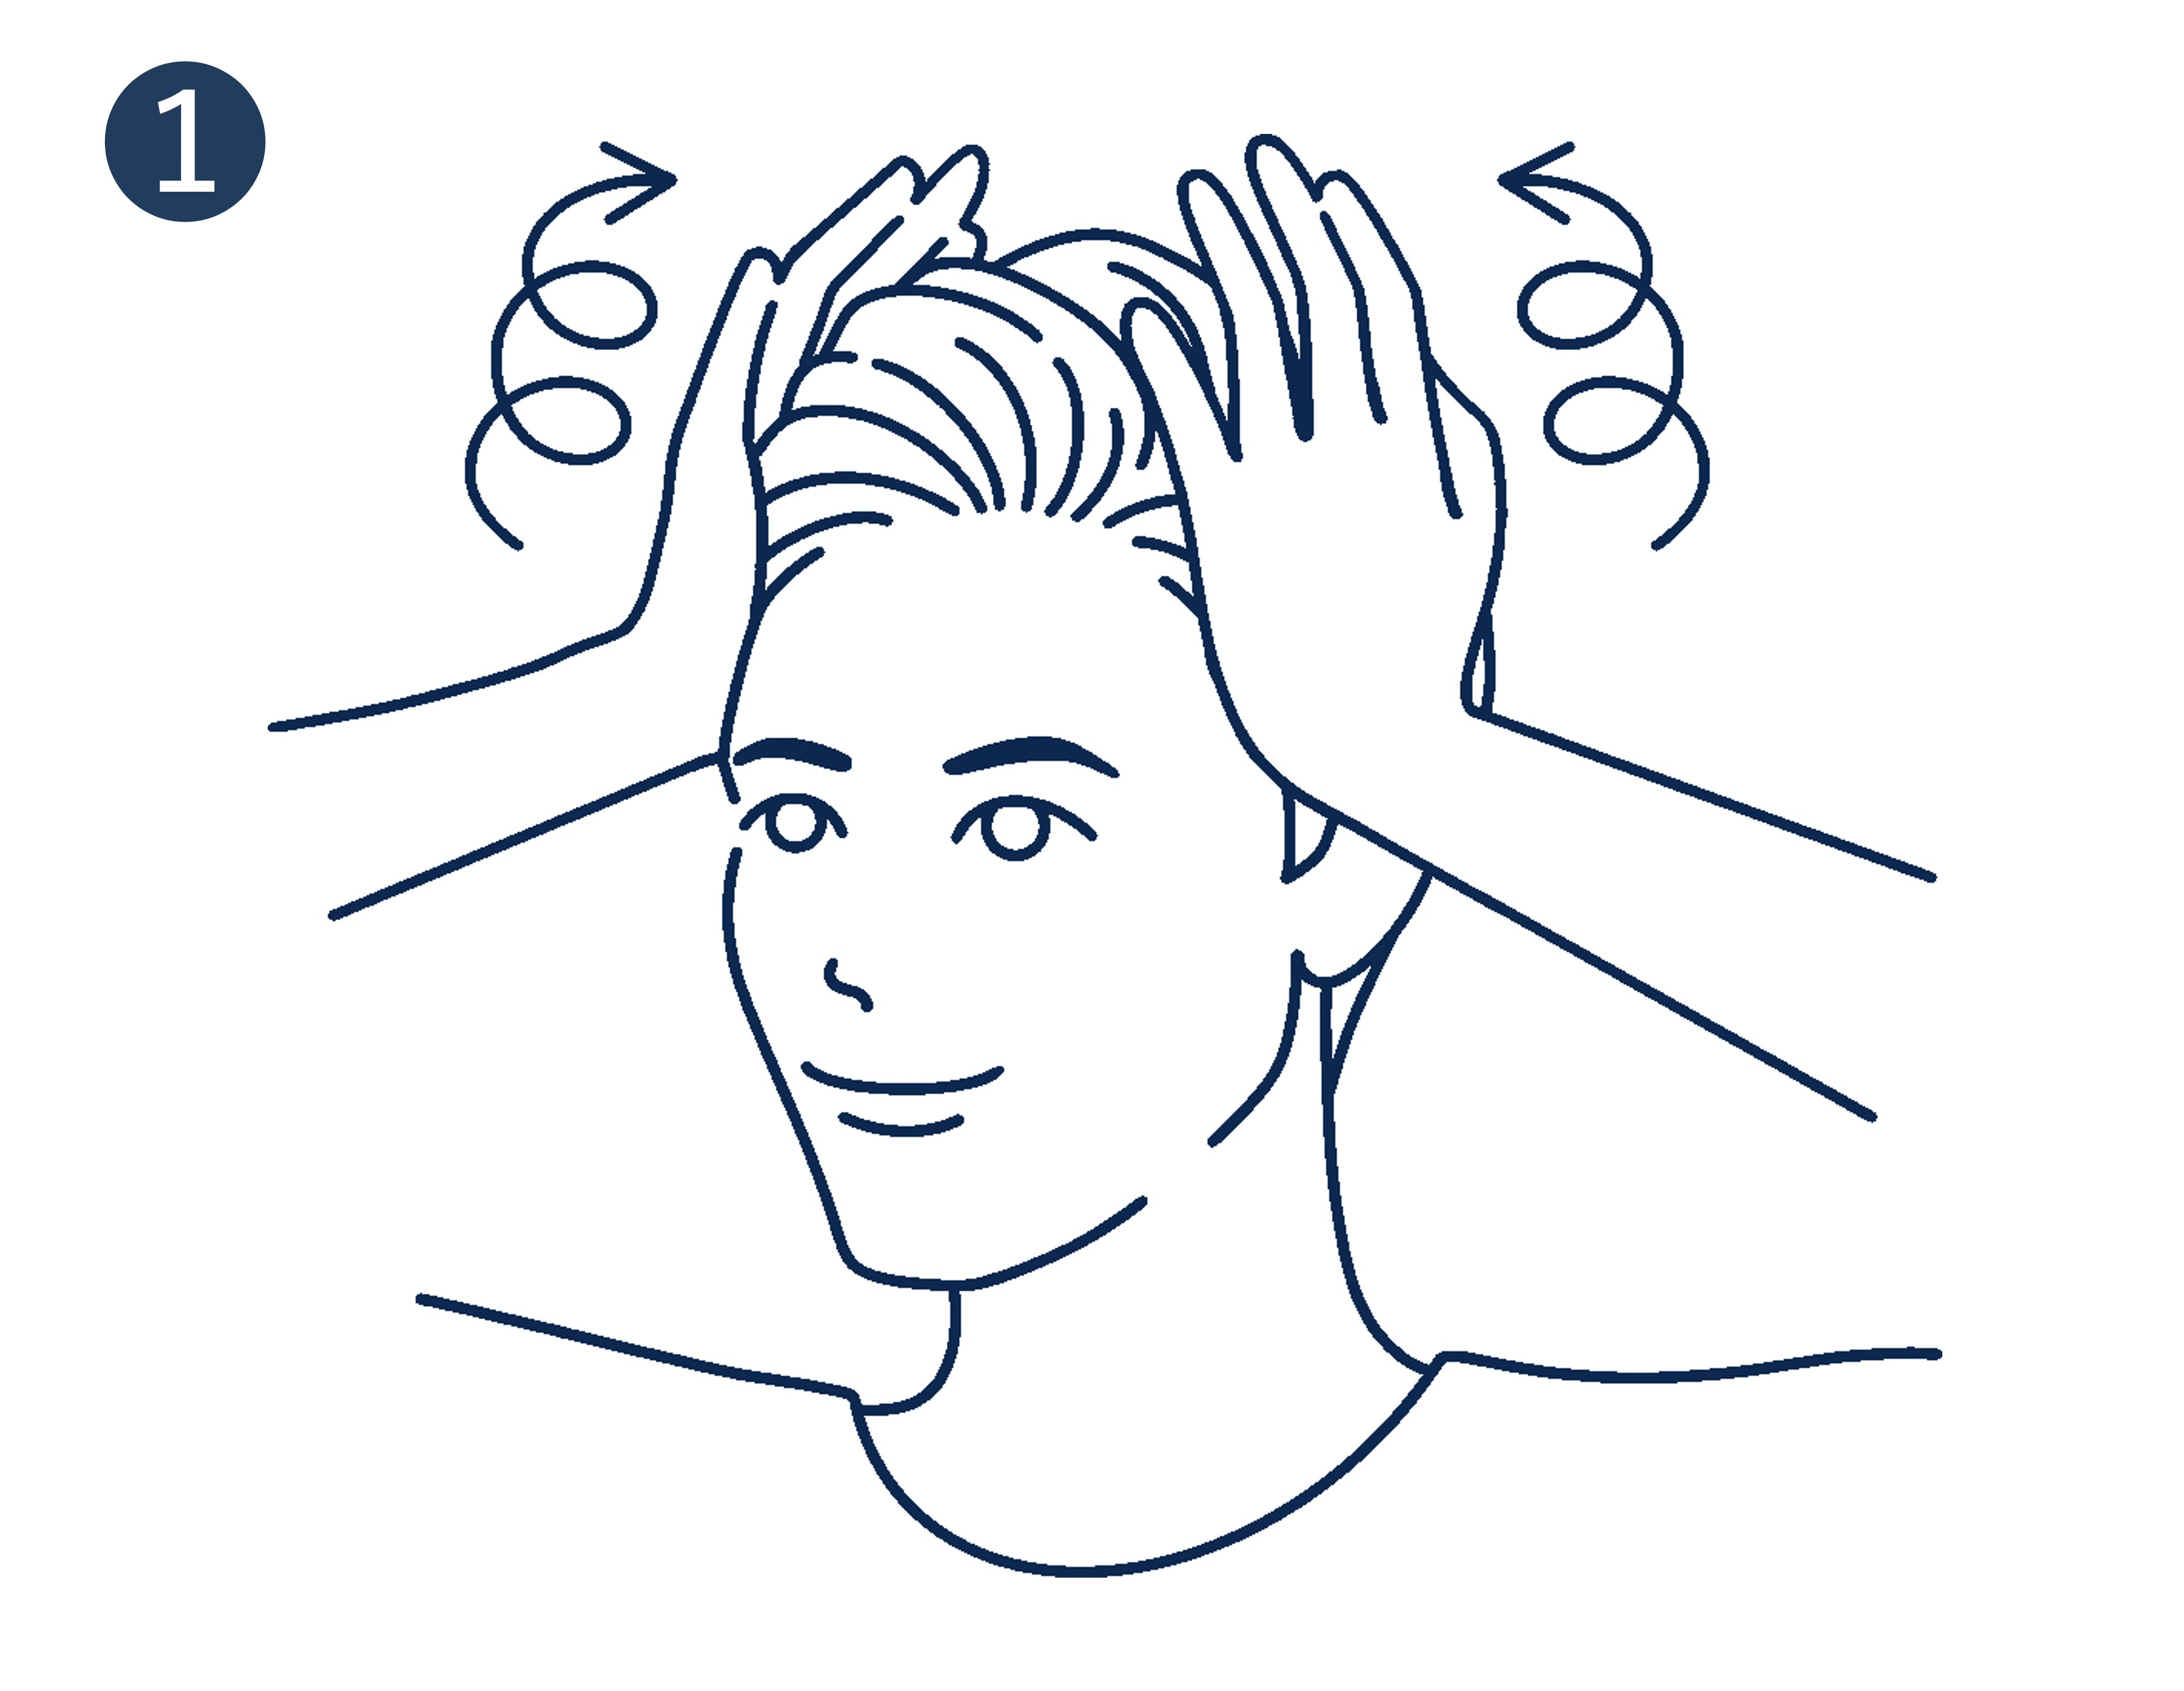 頭皮マッサージの方法①両手で頭を軽くつかみ、親指の腹を耳の上に置きます。次に、手のひらをこめかみより少し上にあてて、押し上げるようにぐるぐる回しながら、頭の上までほぐしていきます